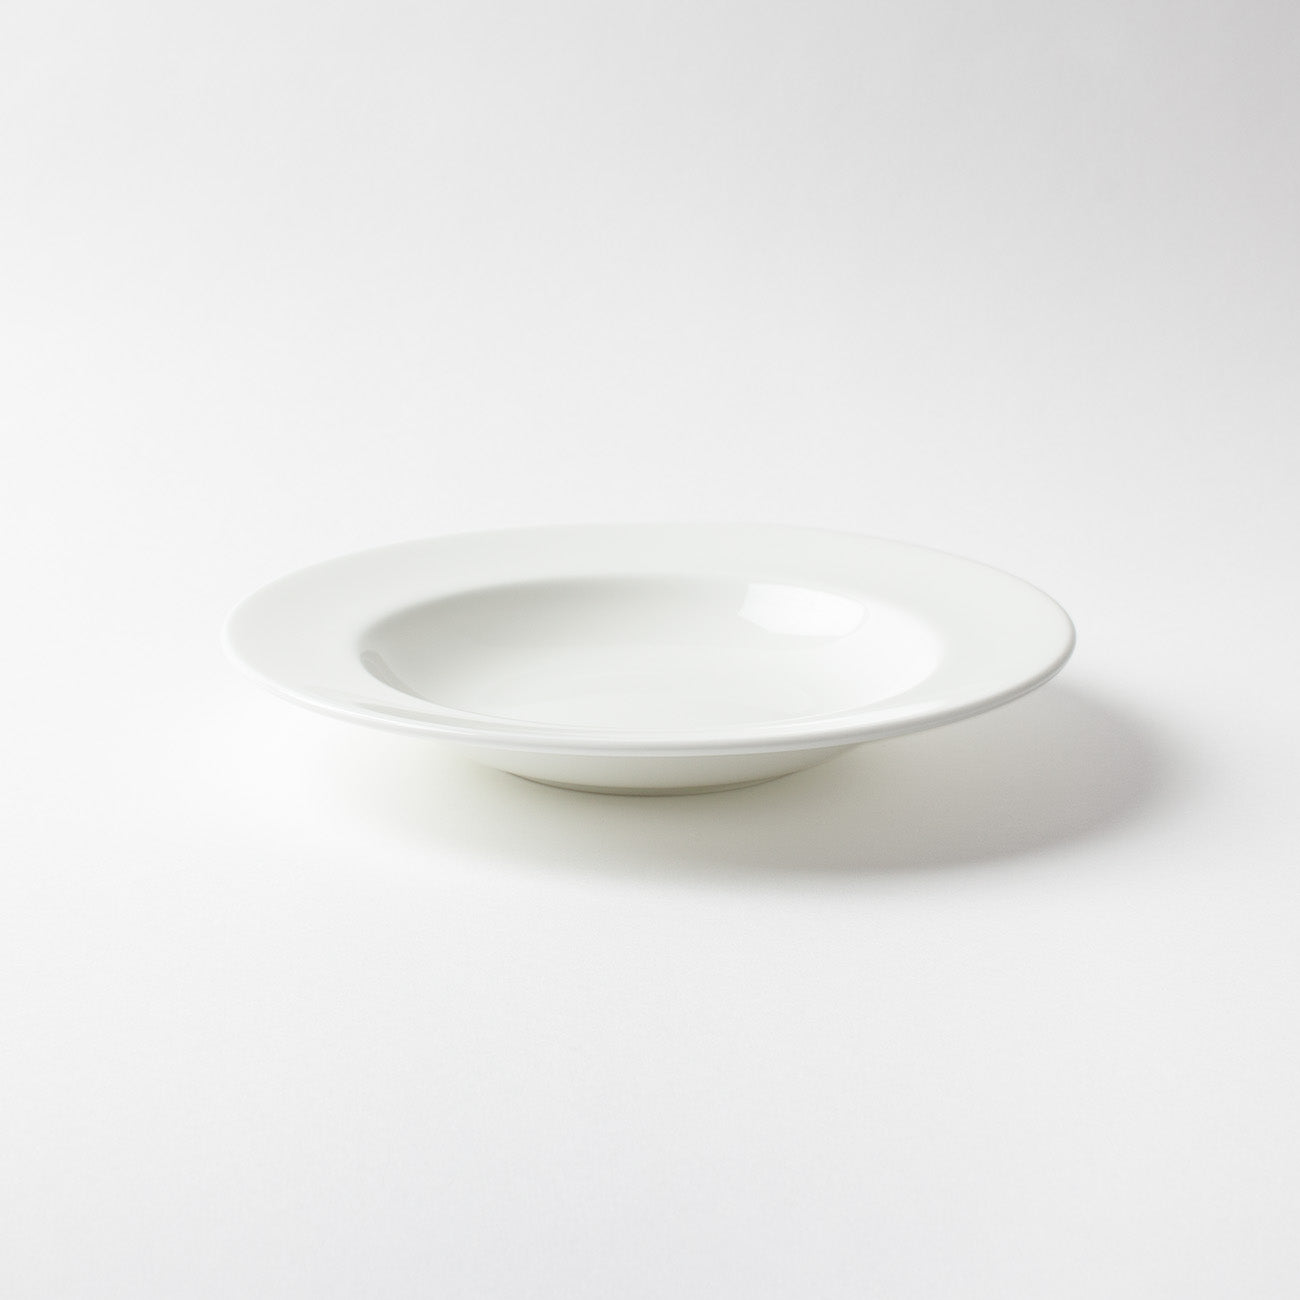 【復興支援商品】22cmリムスープ皿